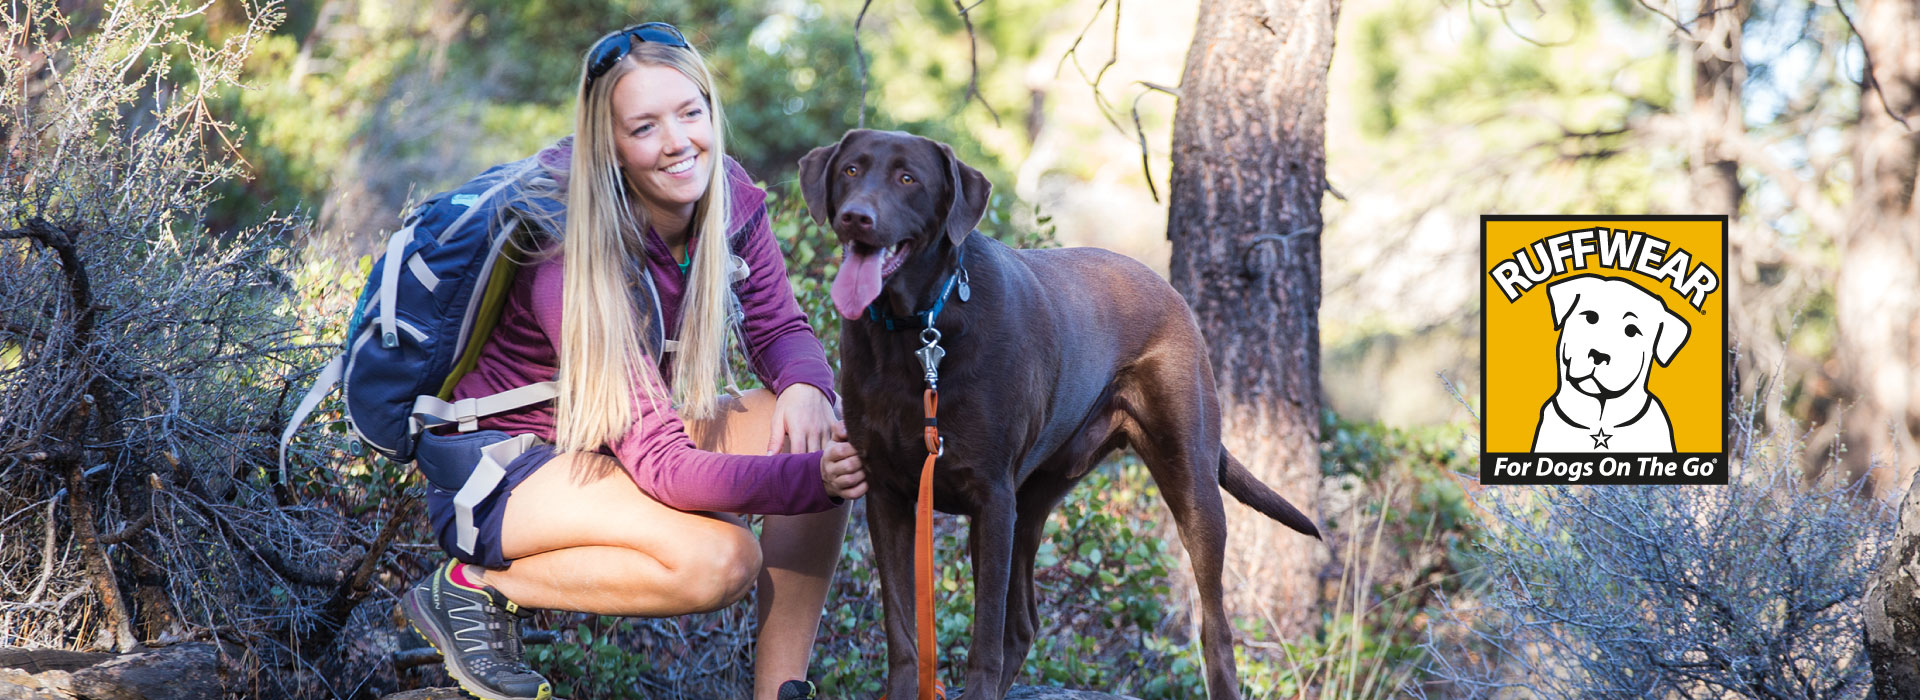 Ruffwear fabrica accesorios para perros avetureros, perros extremos y deportistas:  collares, correas, botas, mochilas y arneses para perro.